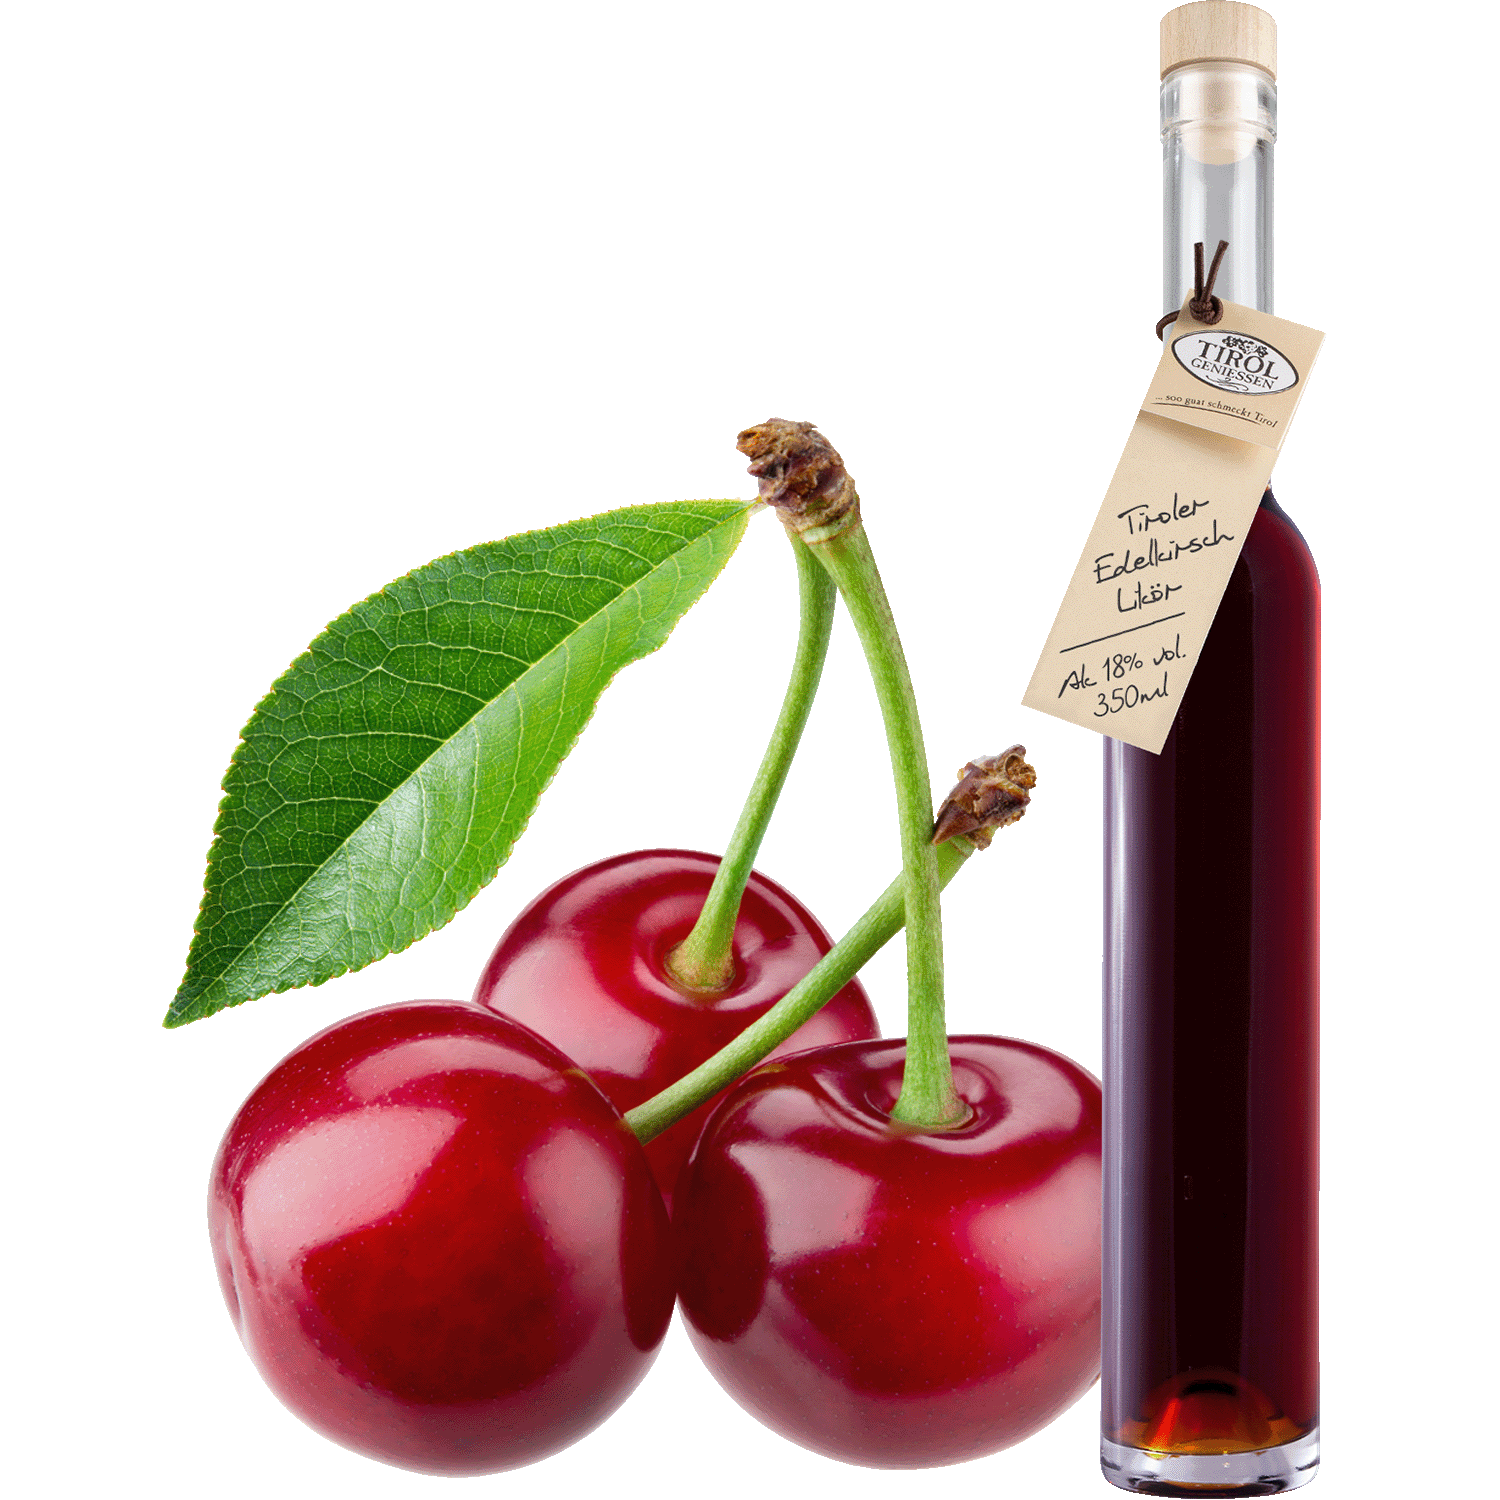 Fine Cherry Liqueur in gift bottle from Austria from Tirol Geniessen